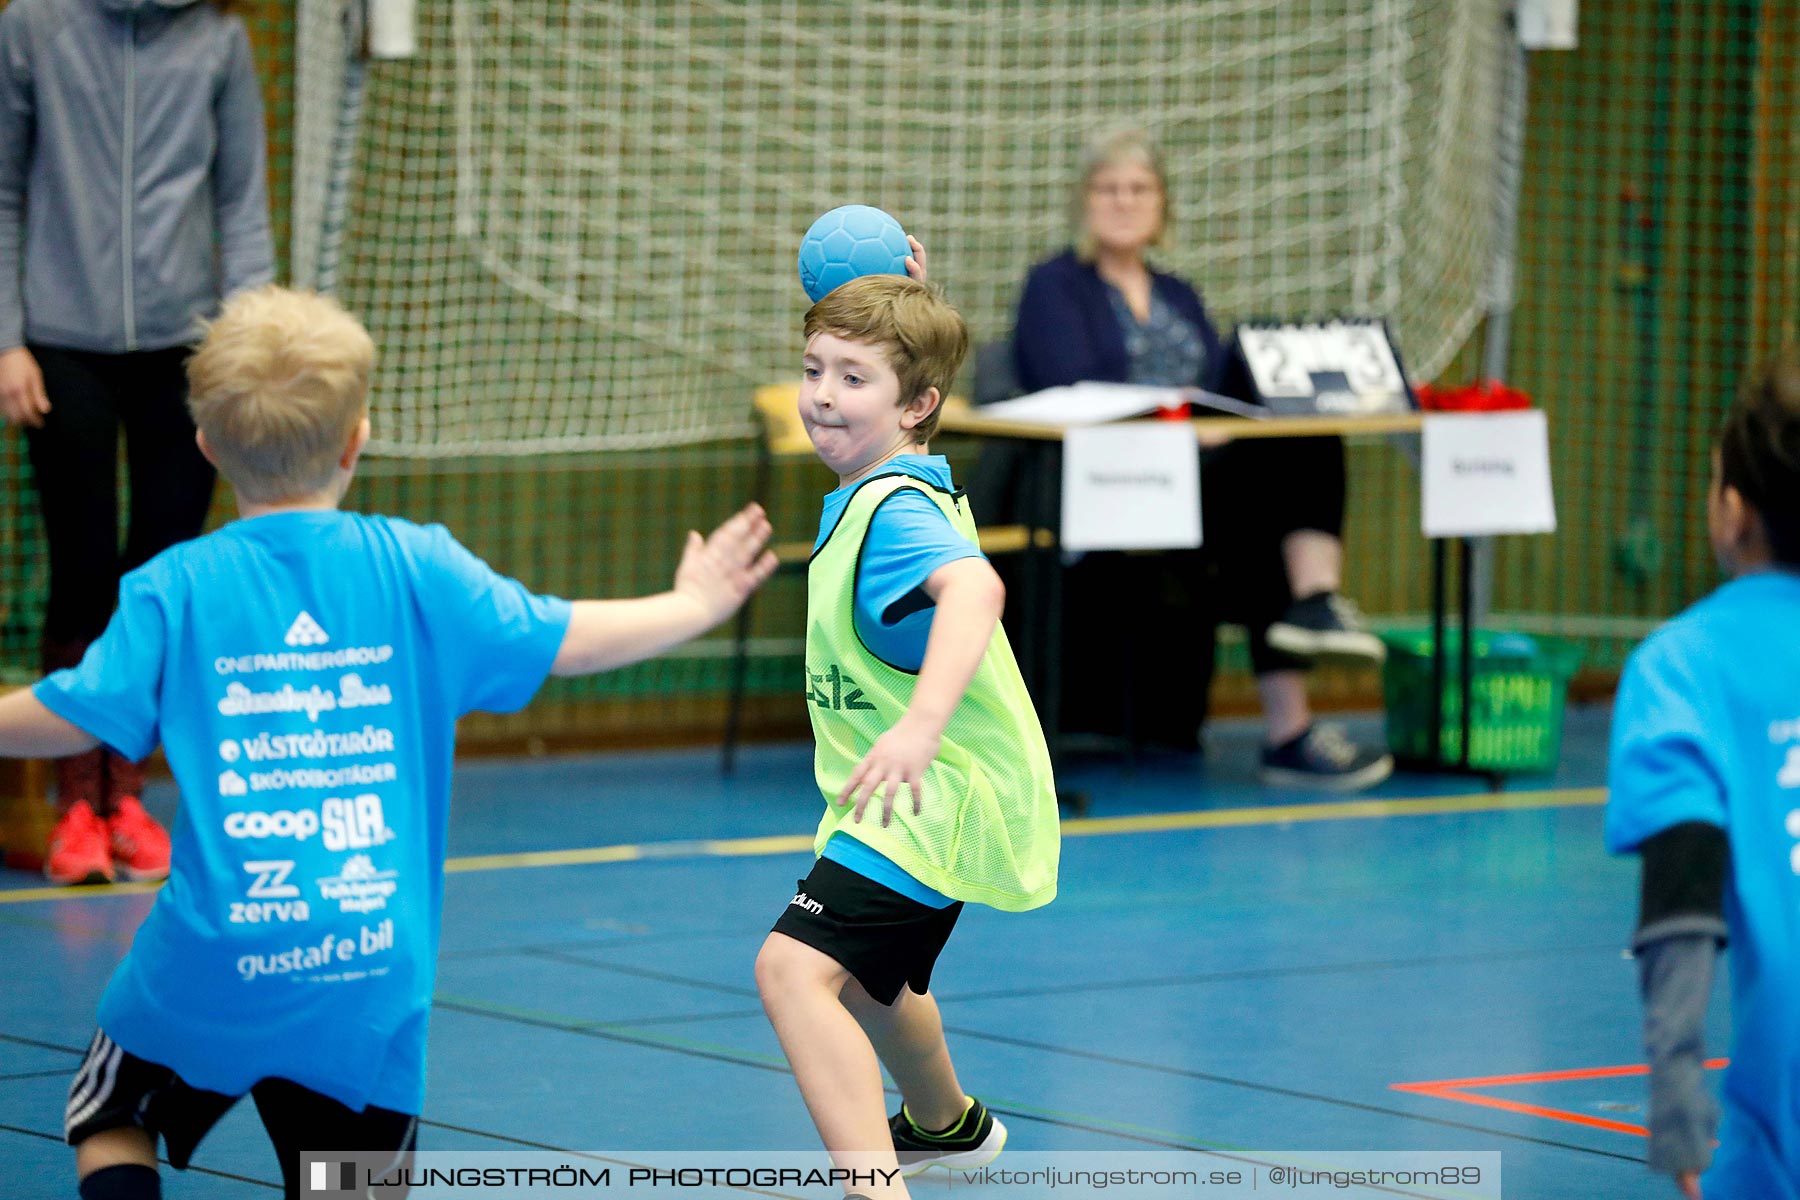 Klasshandboll Skövde 2019 Åldersklass 2010,mix,Arena Skövde,Skövde,Sverige,Handboll,,2019,211887